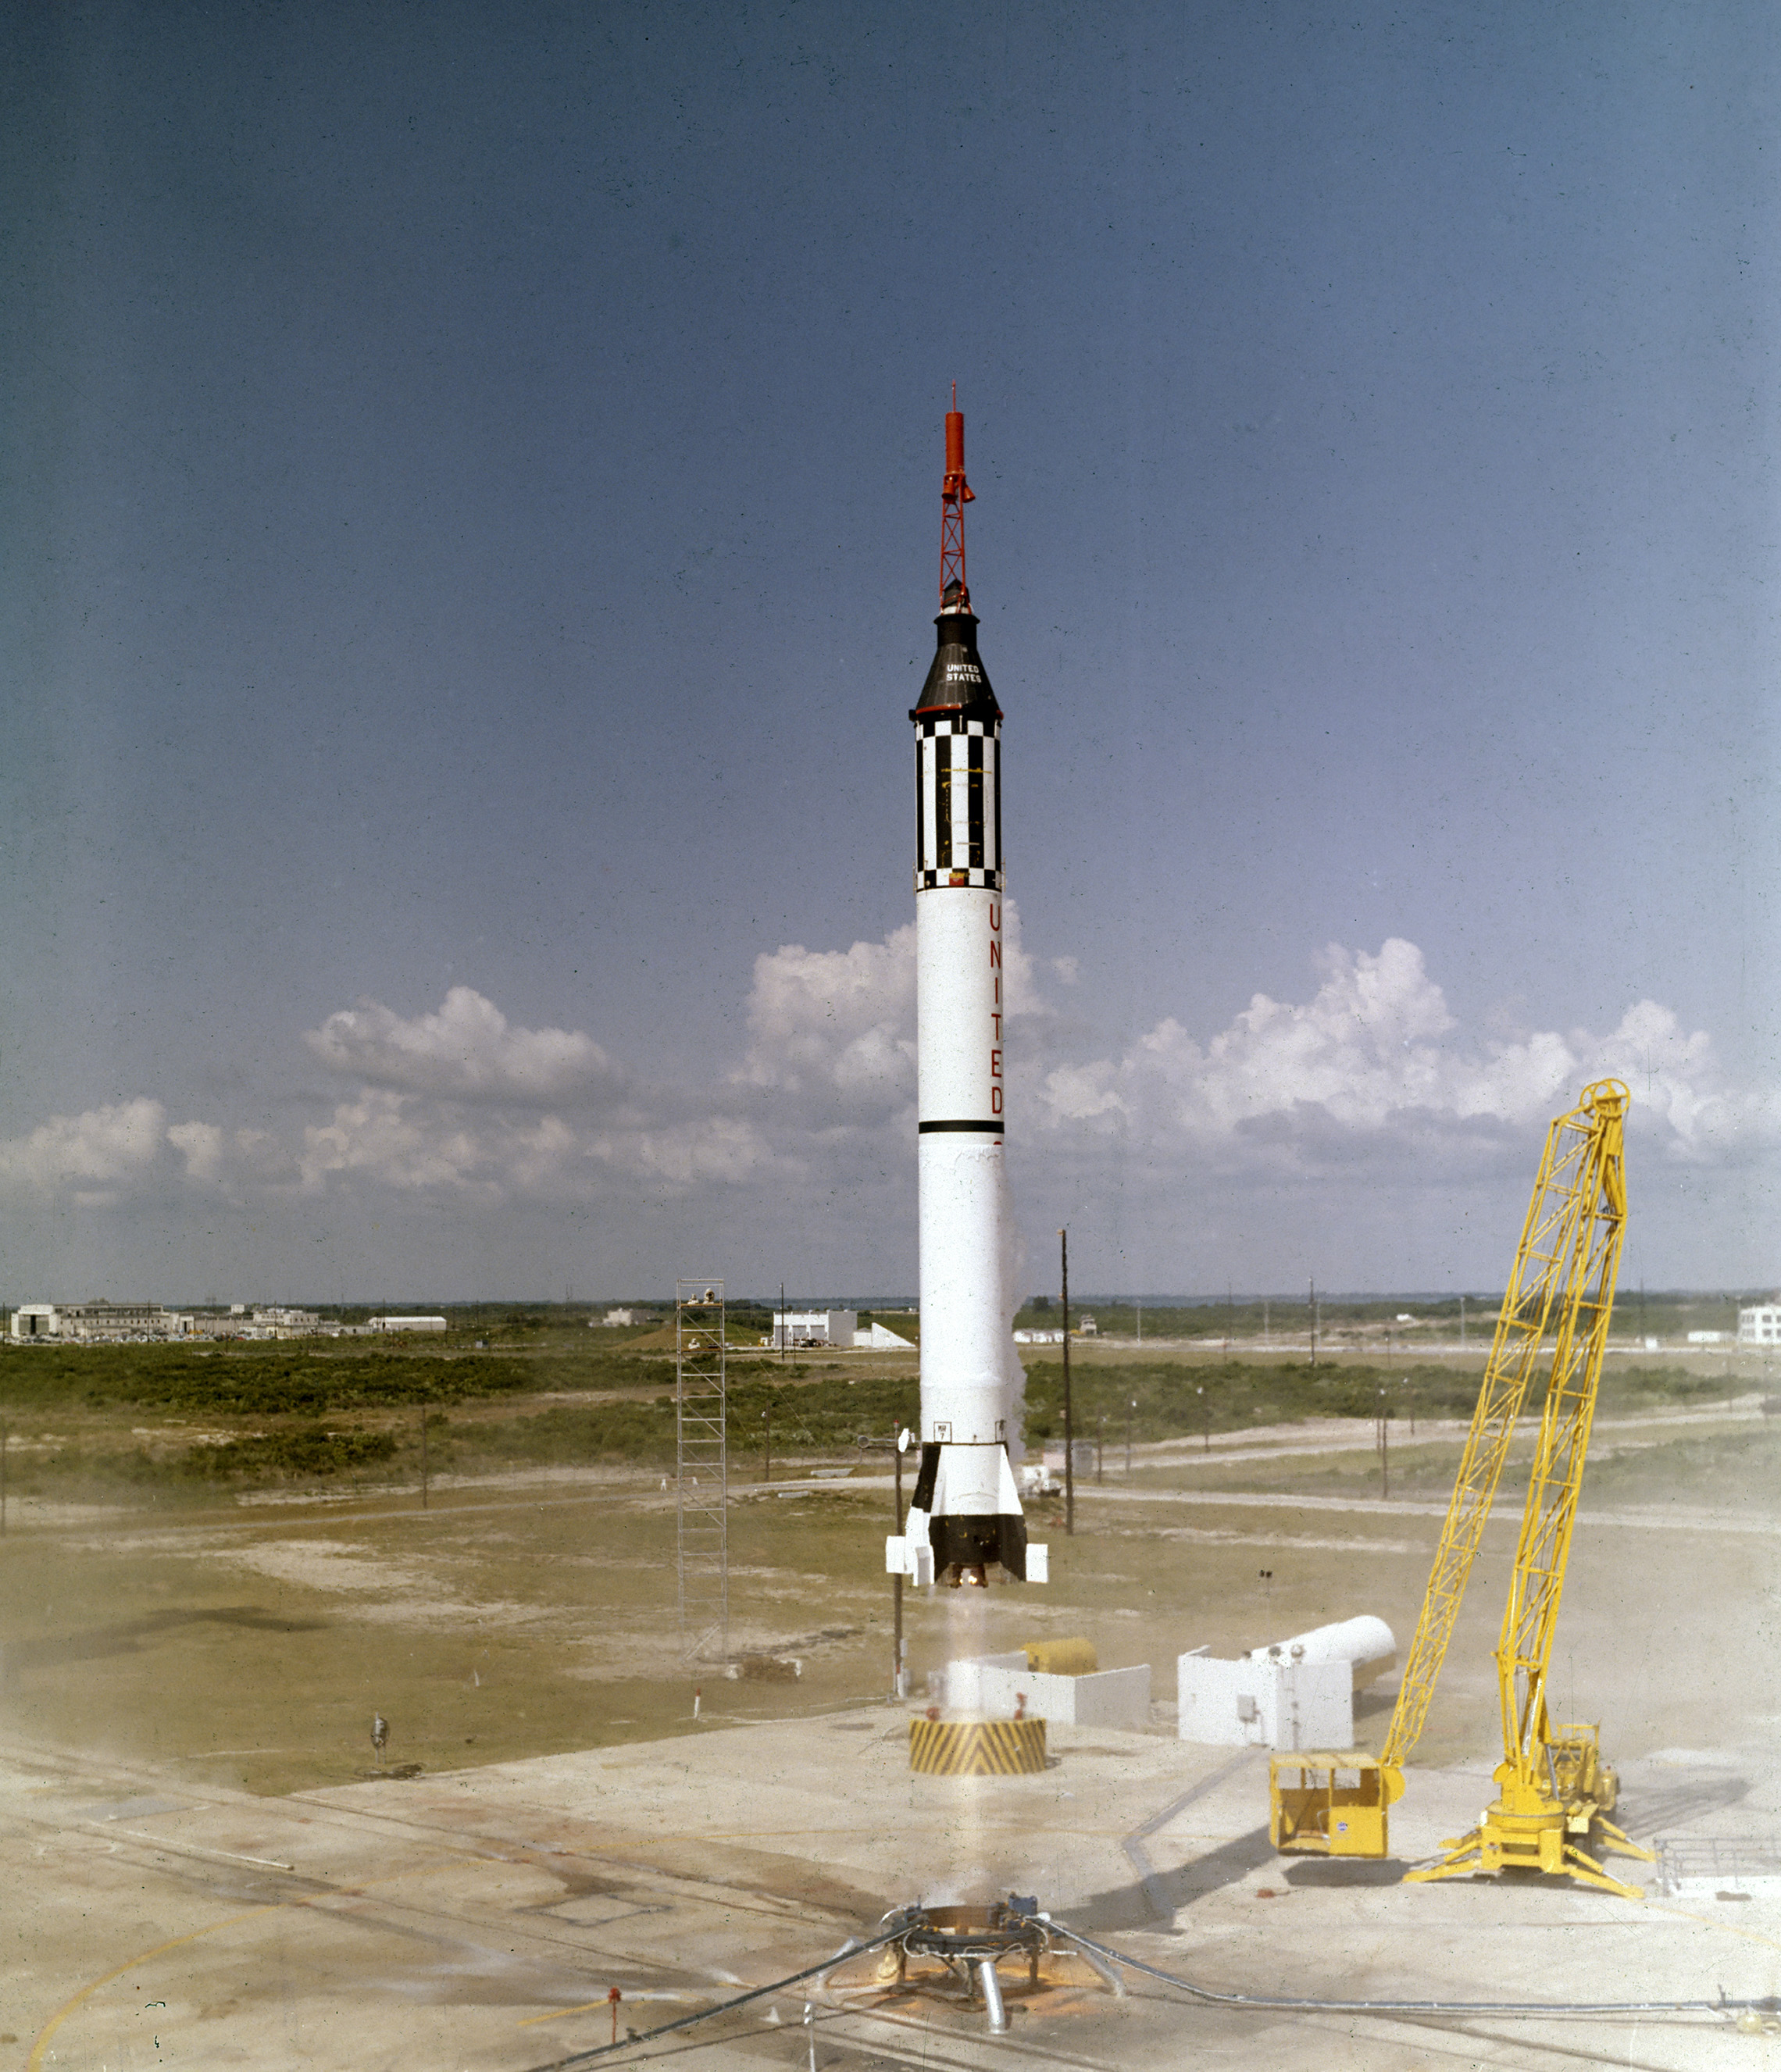 Der Astronaut Alan B. Shepard Jr. hebt am 5. Mai 1961 in der Raumsonde Freedom 7 Mercury ab. Dieser dritte Flug des Mercury-Redstone-Fahrzeugs (MR-3), das von Dr. Wernher von Braun und dem Raketenteam in Huntsille, Alabama, entwickelt wurde, war die erste bemannte Weltraummission für die Vereinigten Staaten. Während des 15-minütigen suborbitalen Fluges erreichte Shepard eine Höhe von 115 Meilen und reiste 302 Meilen bergab. Astronaut Alan B. Shepard Jr.hebt am 5. Mai 1961 in der Raumsonde Freedom 7 Mercury ab. Dieser dritte Flug des Mercury-Redstone-Fahrzeugs (MR-3), das von Dr. Wernher von Braun und dem Raketenteam in Hunsville, Alabama, entwickelt wurde, war die erste bemannte Weltraummission für die Vereinigten Staaten. Während des 15-minütigen suborbitalen Fluges, der eine Höchstgeschwindigkeit von 5.180 Meilen pro Stunde erreichte, erreichte Shepard eine Höhe von 116 Meilen und reiste 302 Meilen abwärts.